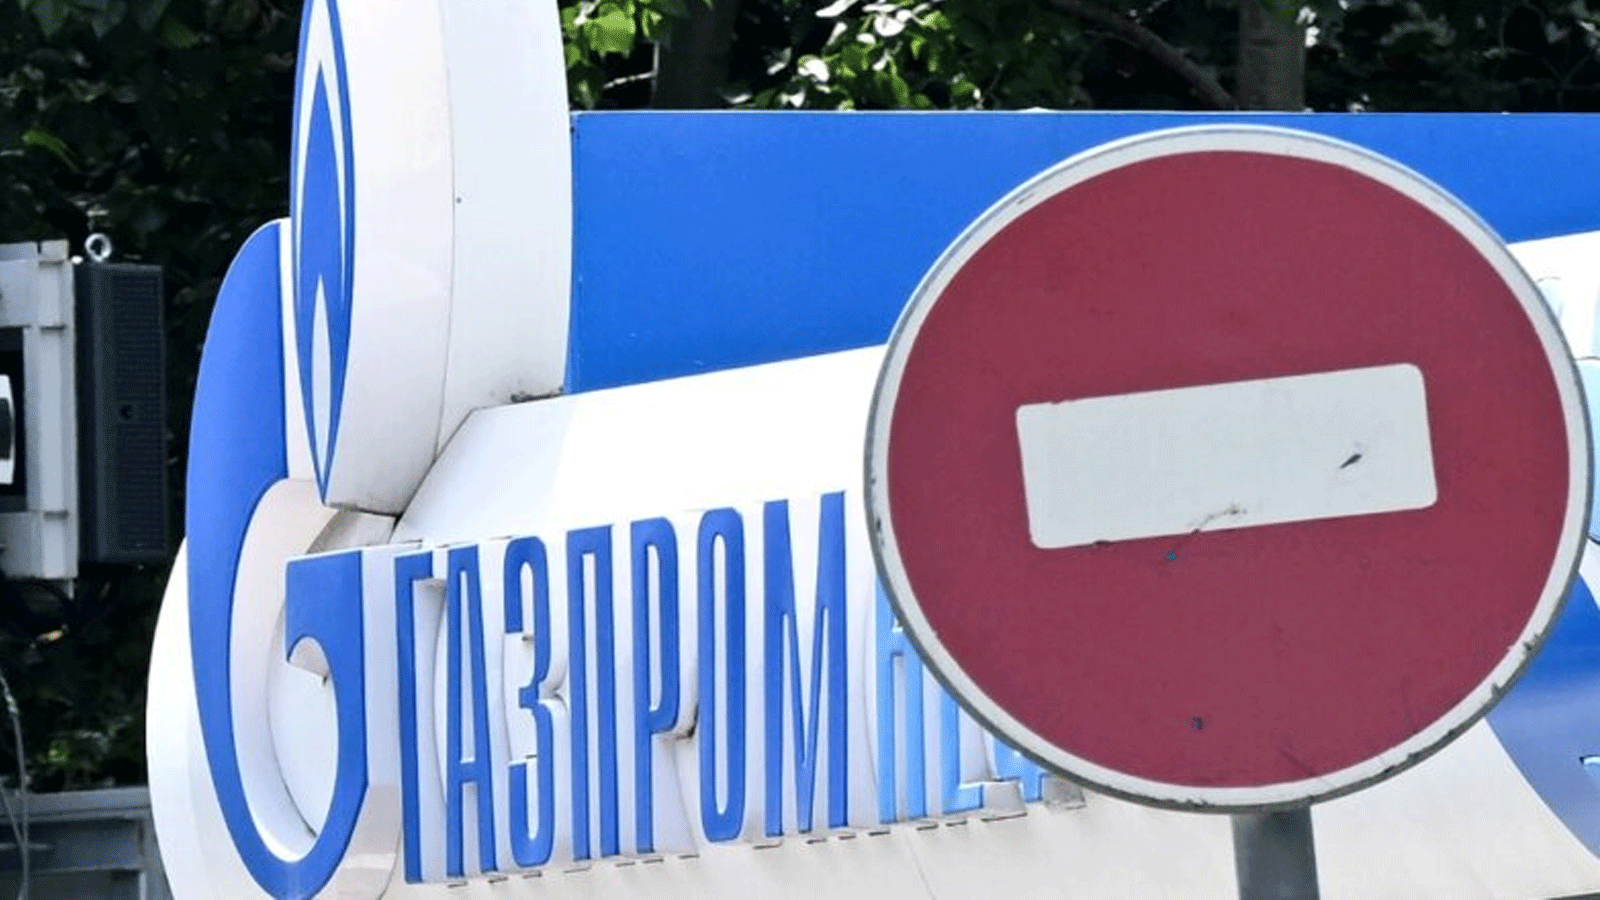 شعار شركة الطاقة الروسية العملاقة غازبروم في إحدى محطات الوقود التابعة لها في موسكو في 11 يوليو \تموز 2022